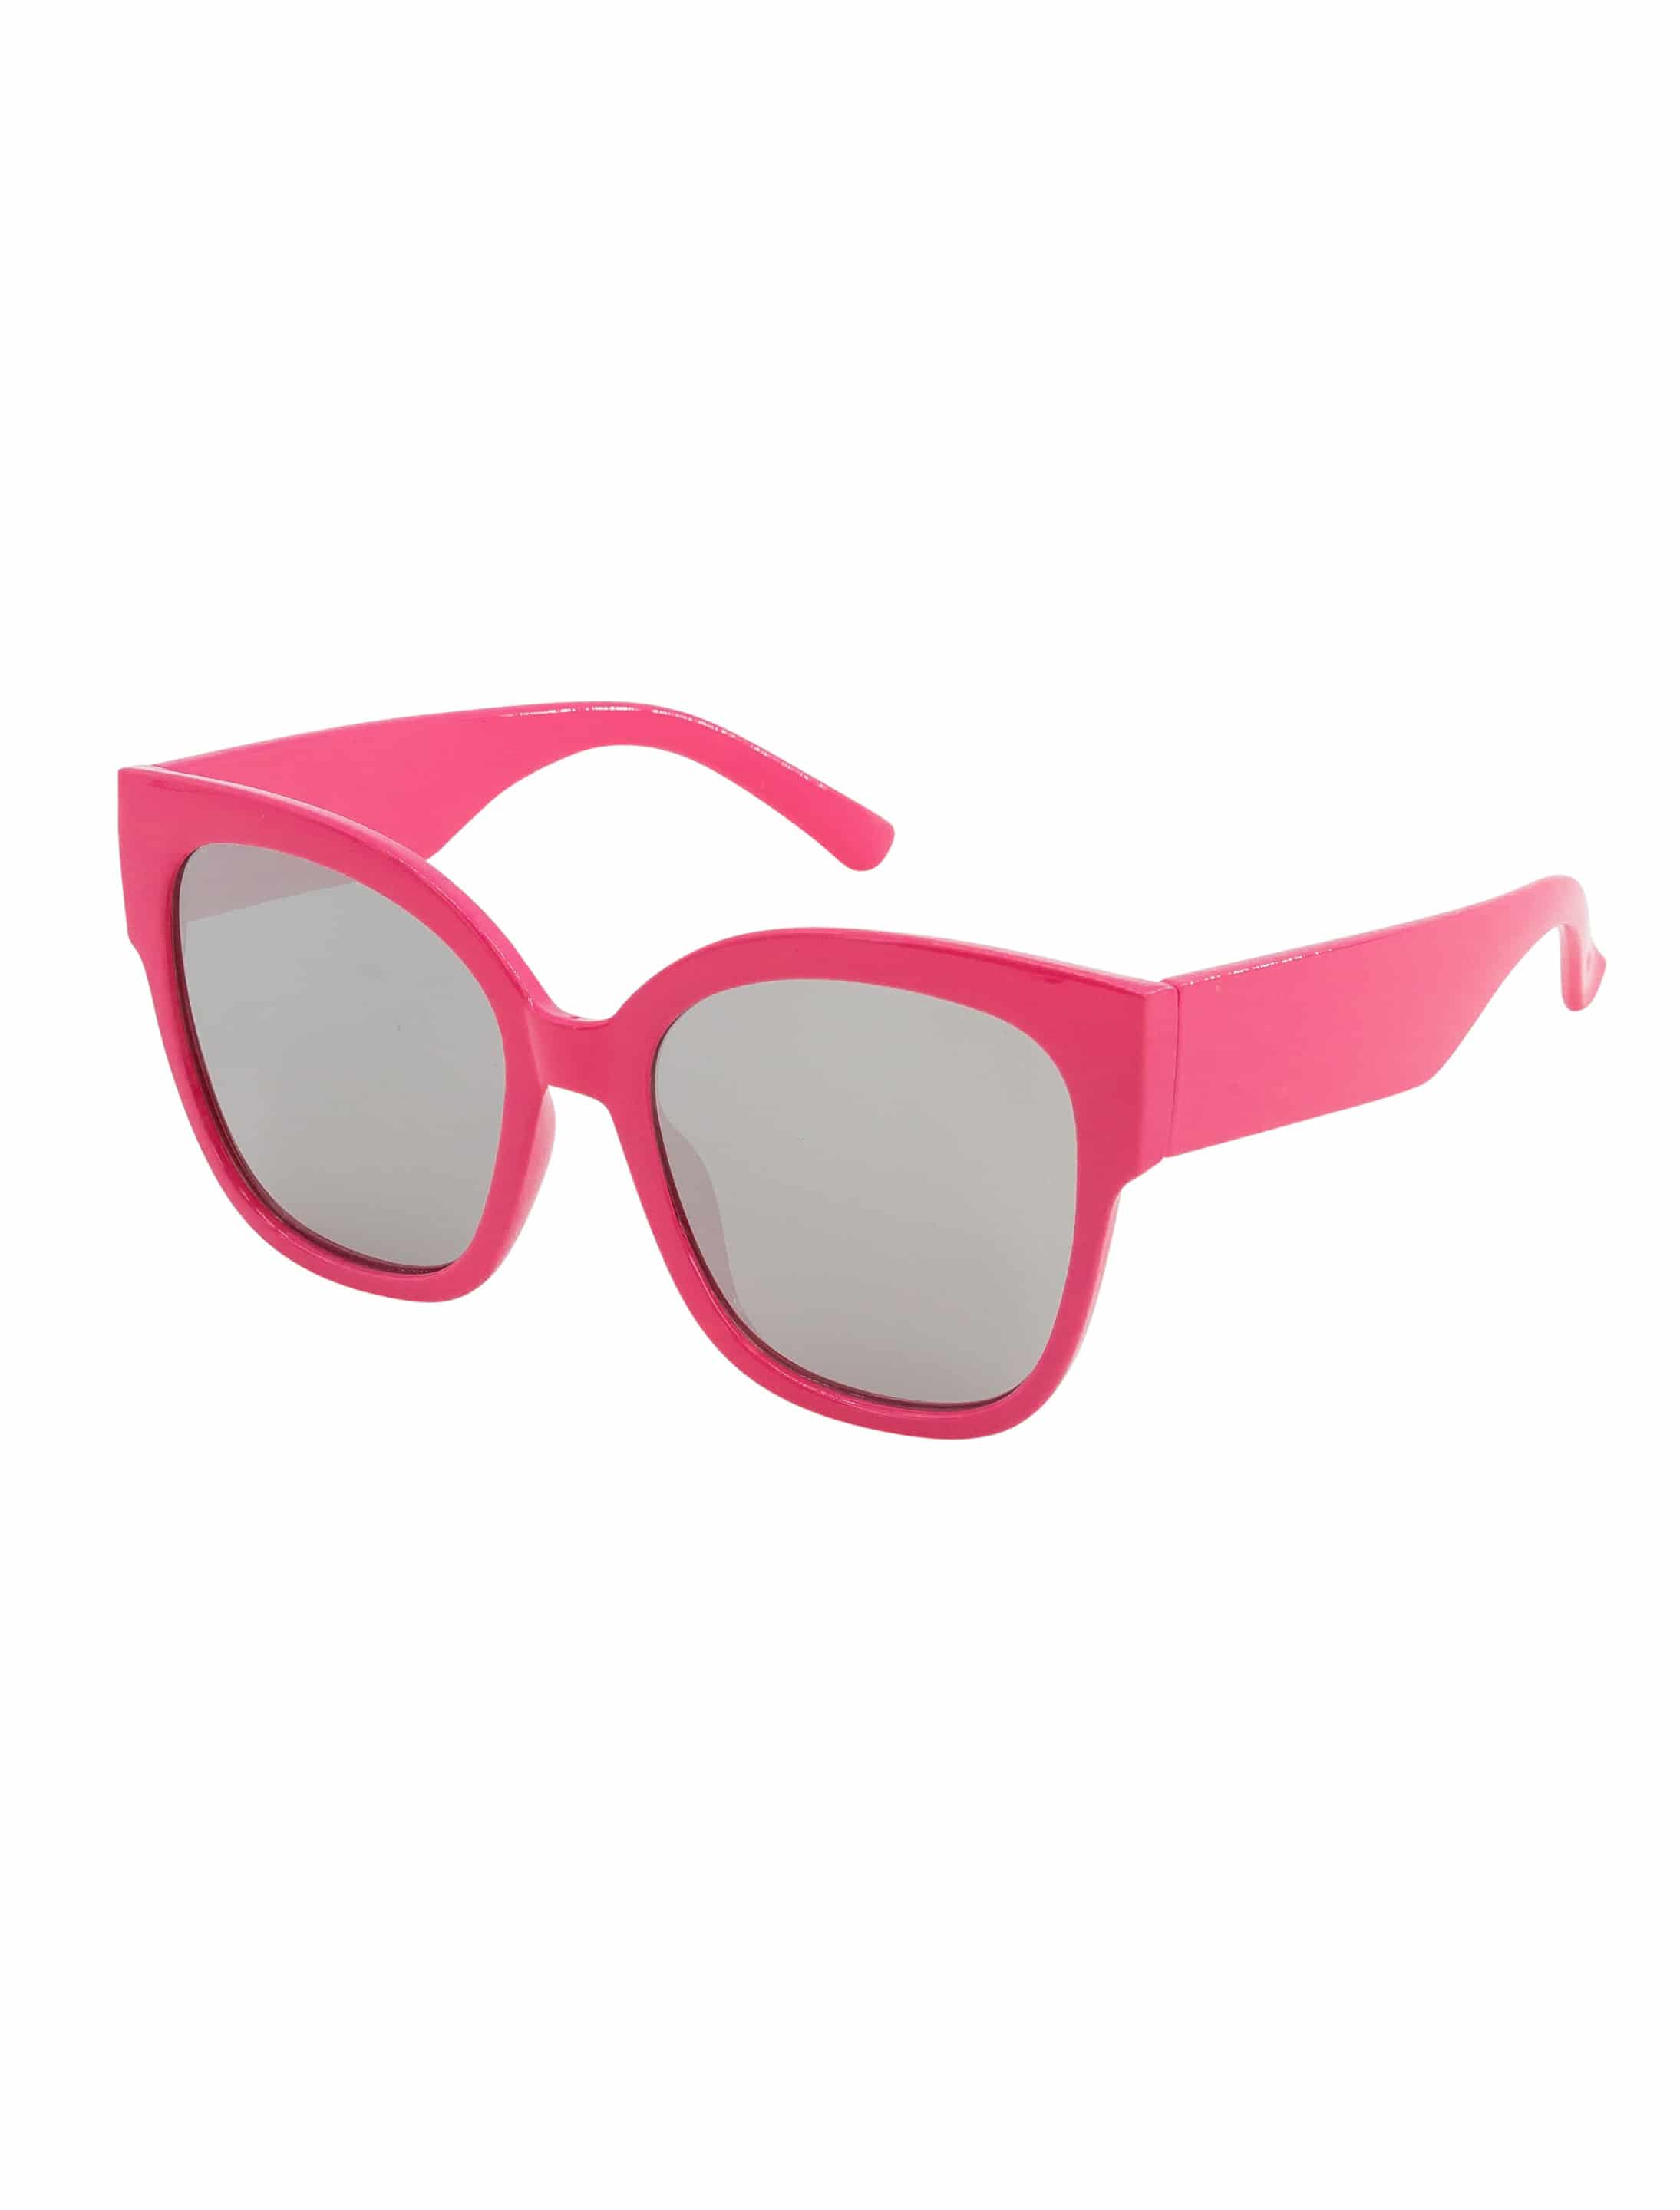 Brille pink Gläser weiß verspiegelt pink